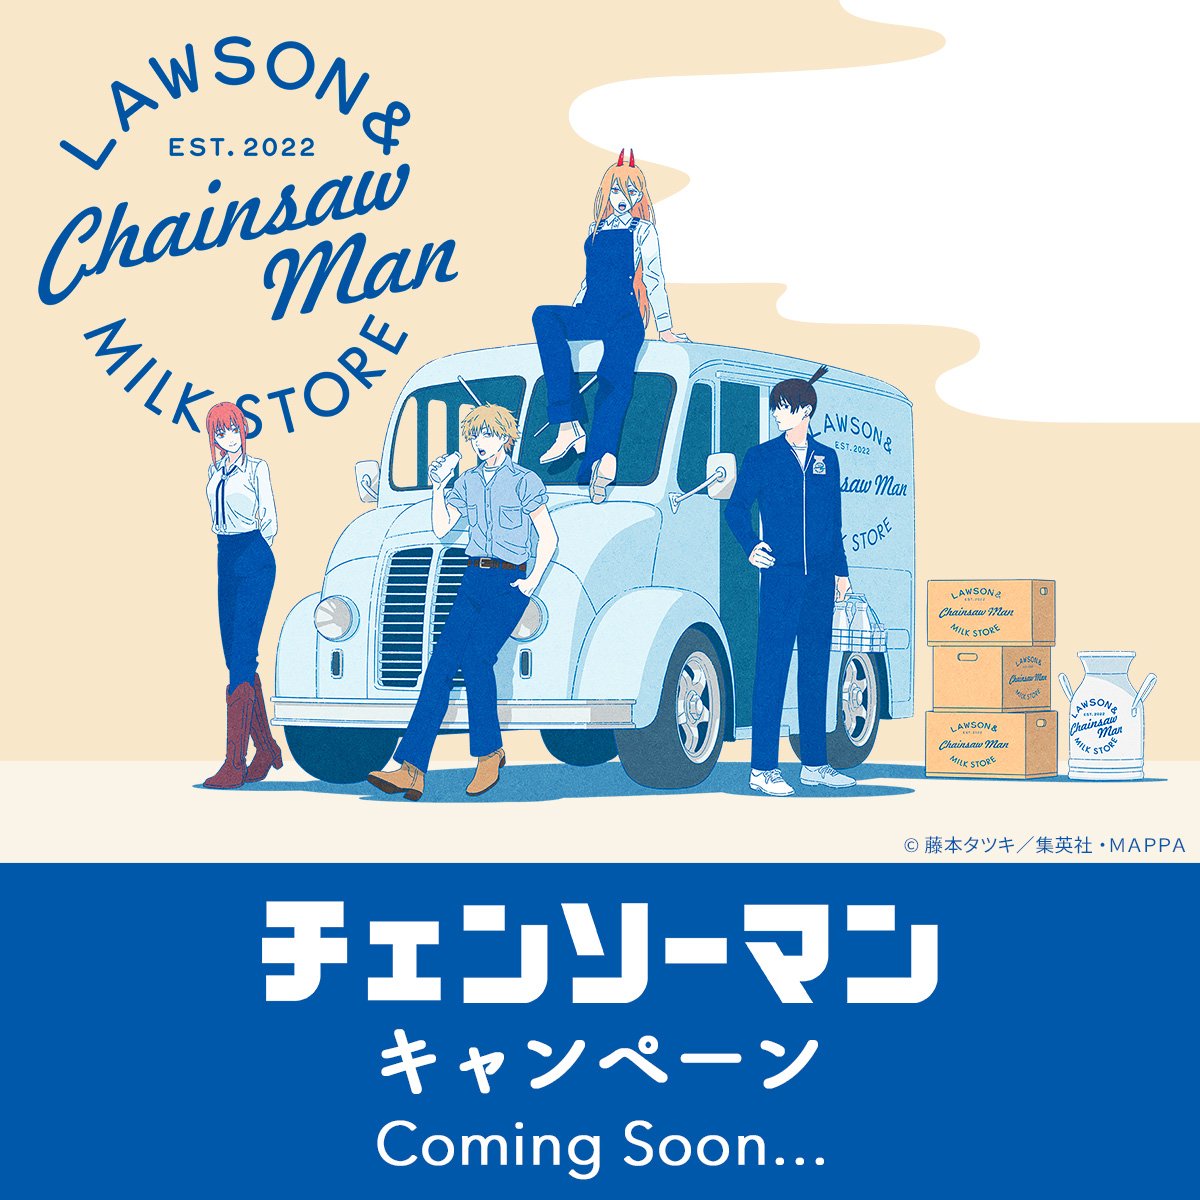 #ローソン（@akiko_lawson）にて『#チェンソーマン』キャンペーンが実施決定！詳細は後日公開いたしますので、お楽しみに！#chainsawman 